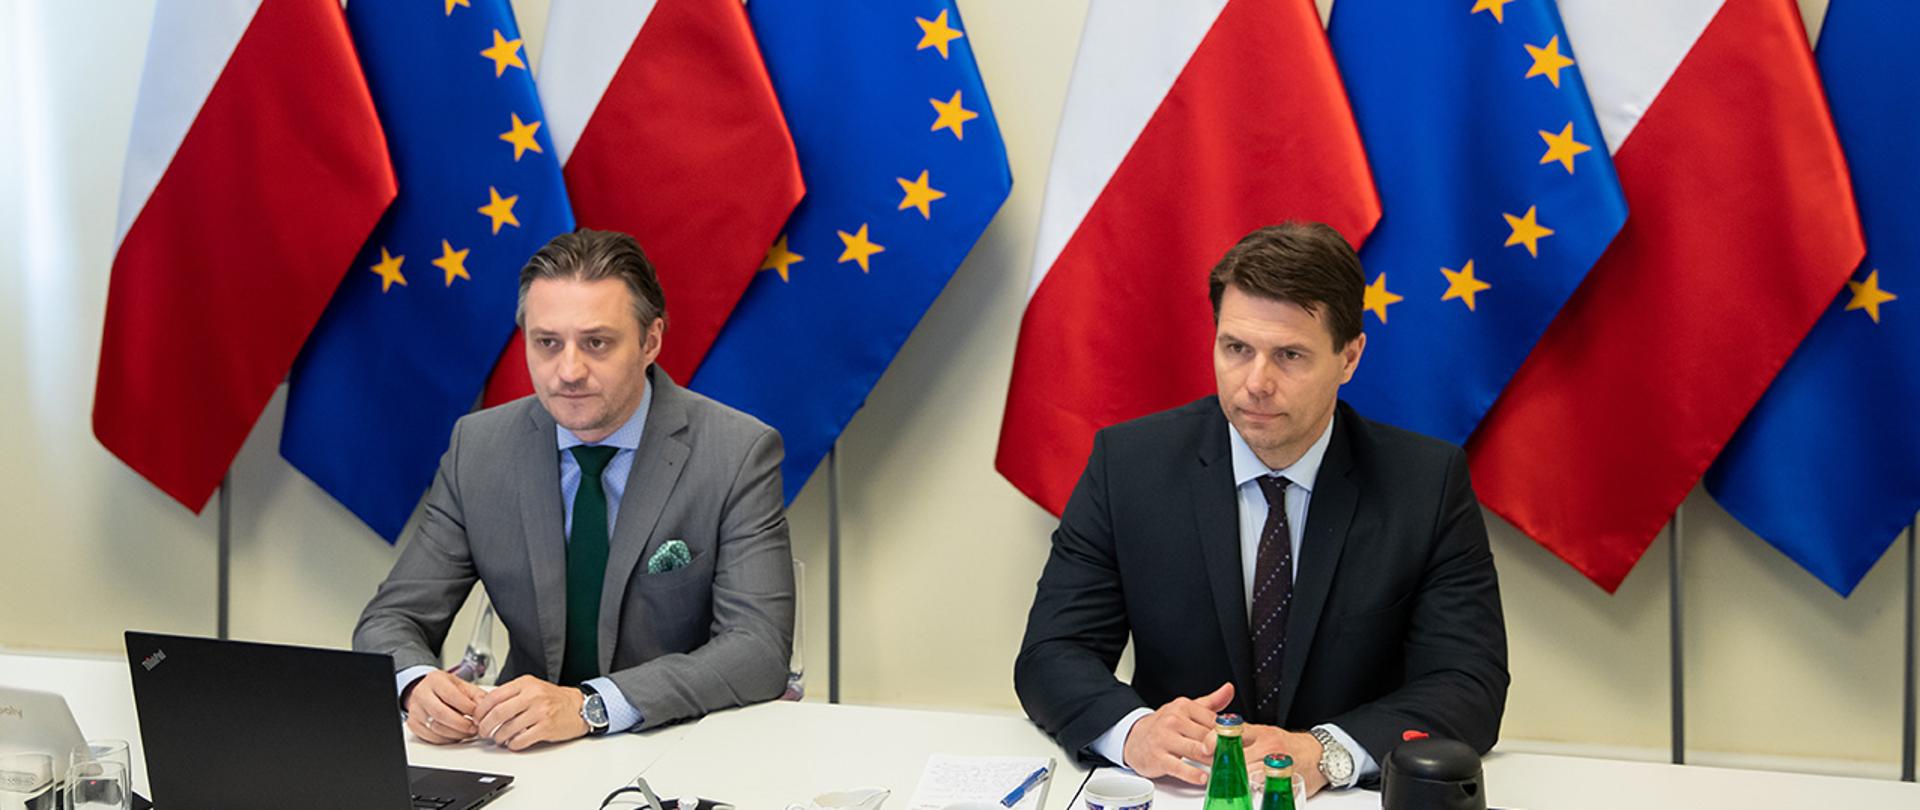 Na zdjęciu widać siedzących przy stole Bartosza Grodeckiego wiceministra SWiA i Mariusza Boguszewskiego dyrektora Departamentu Spraw Międzynarodowych MSWiA. W tle widać flagi Polski i UE.